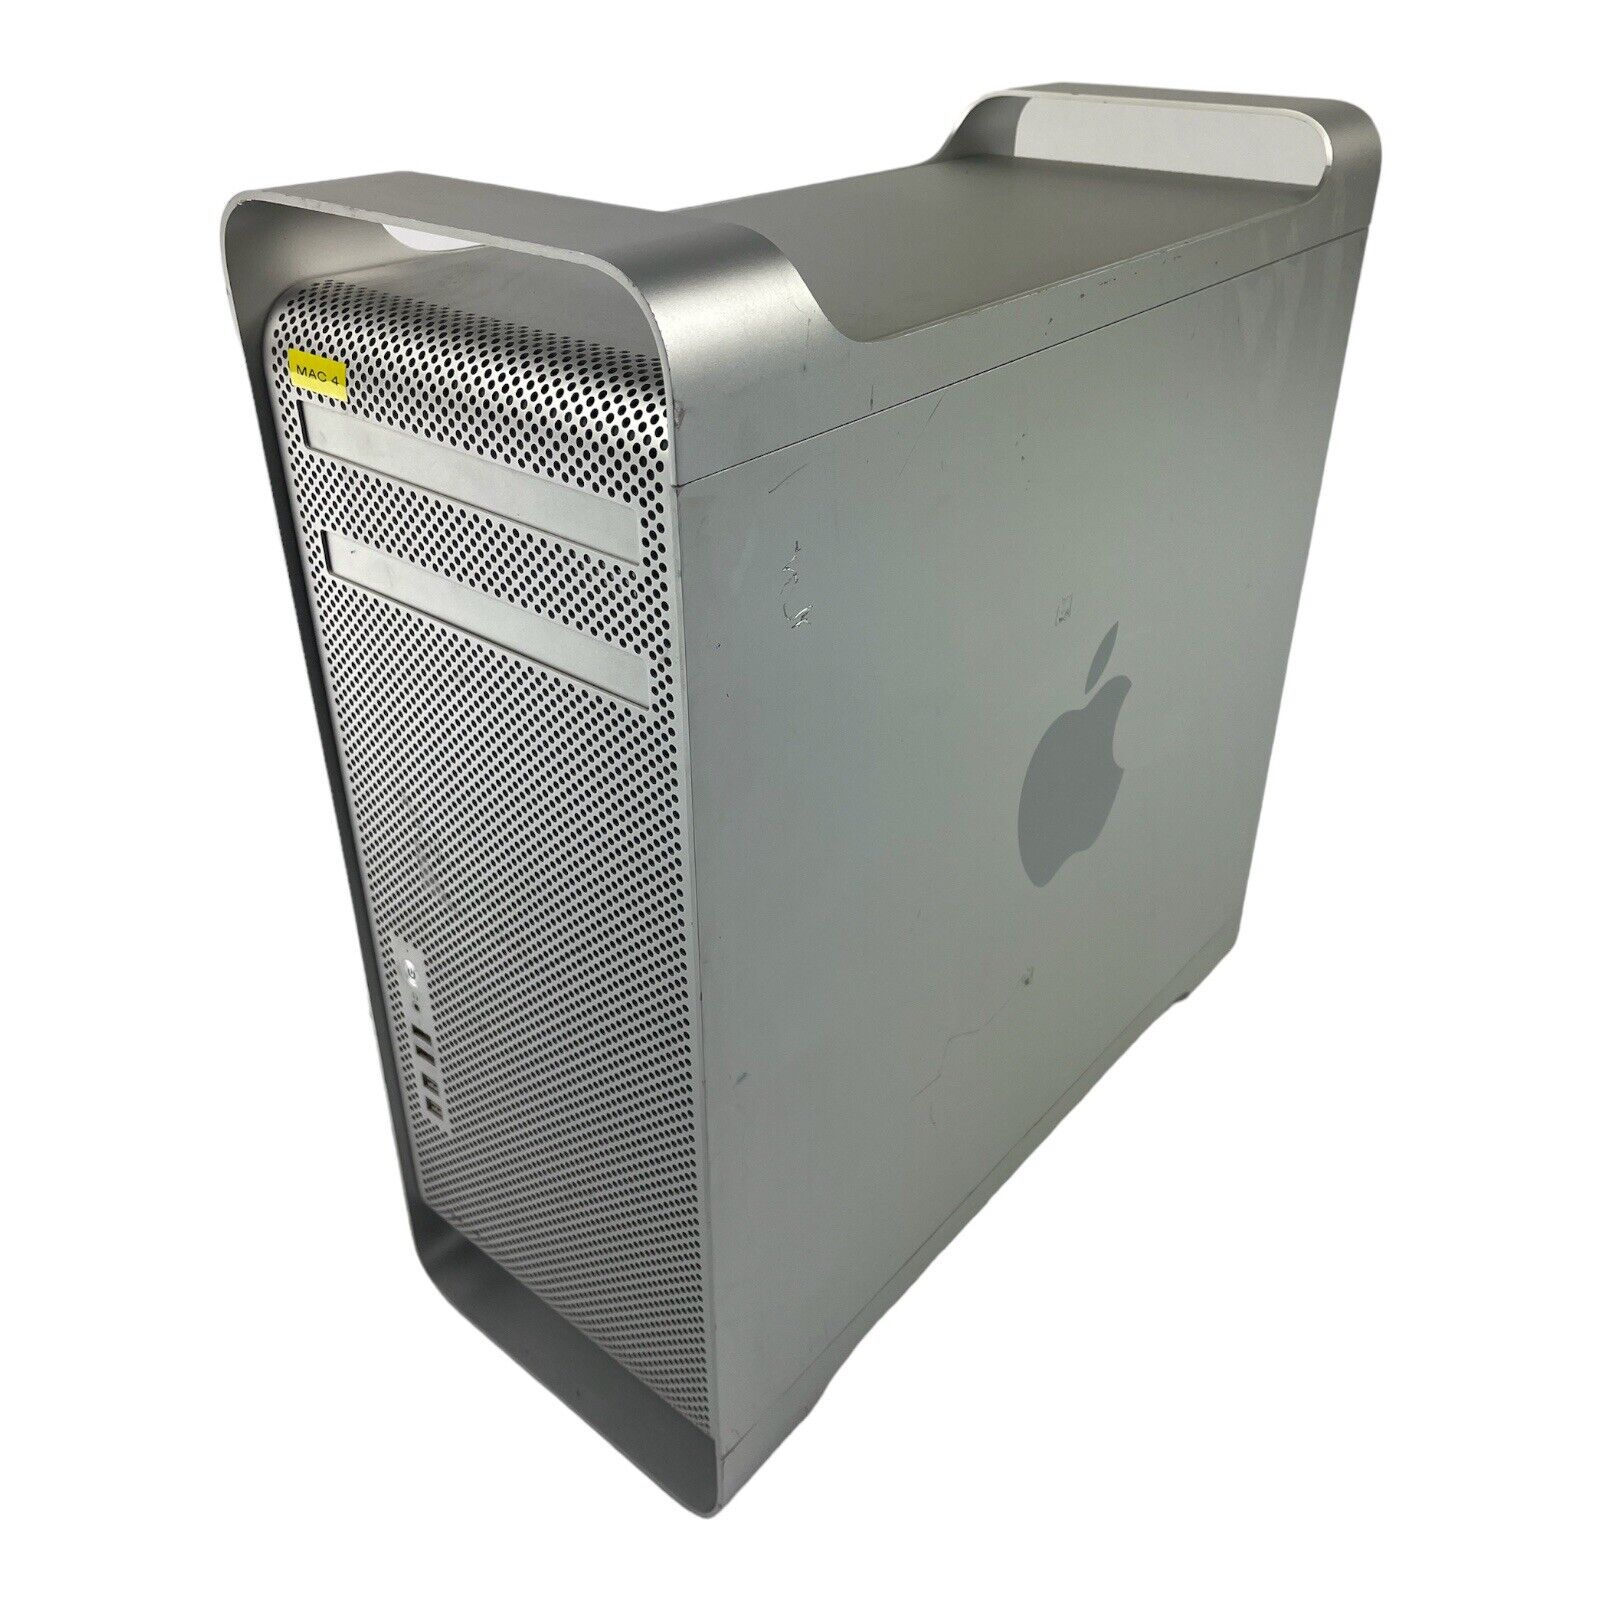 Apple Mac Pro 5,1 Twelve 12 Core A1289 2*Xeon 2.40GHz 24GB 480 SSD OSX 10.13